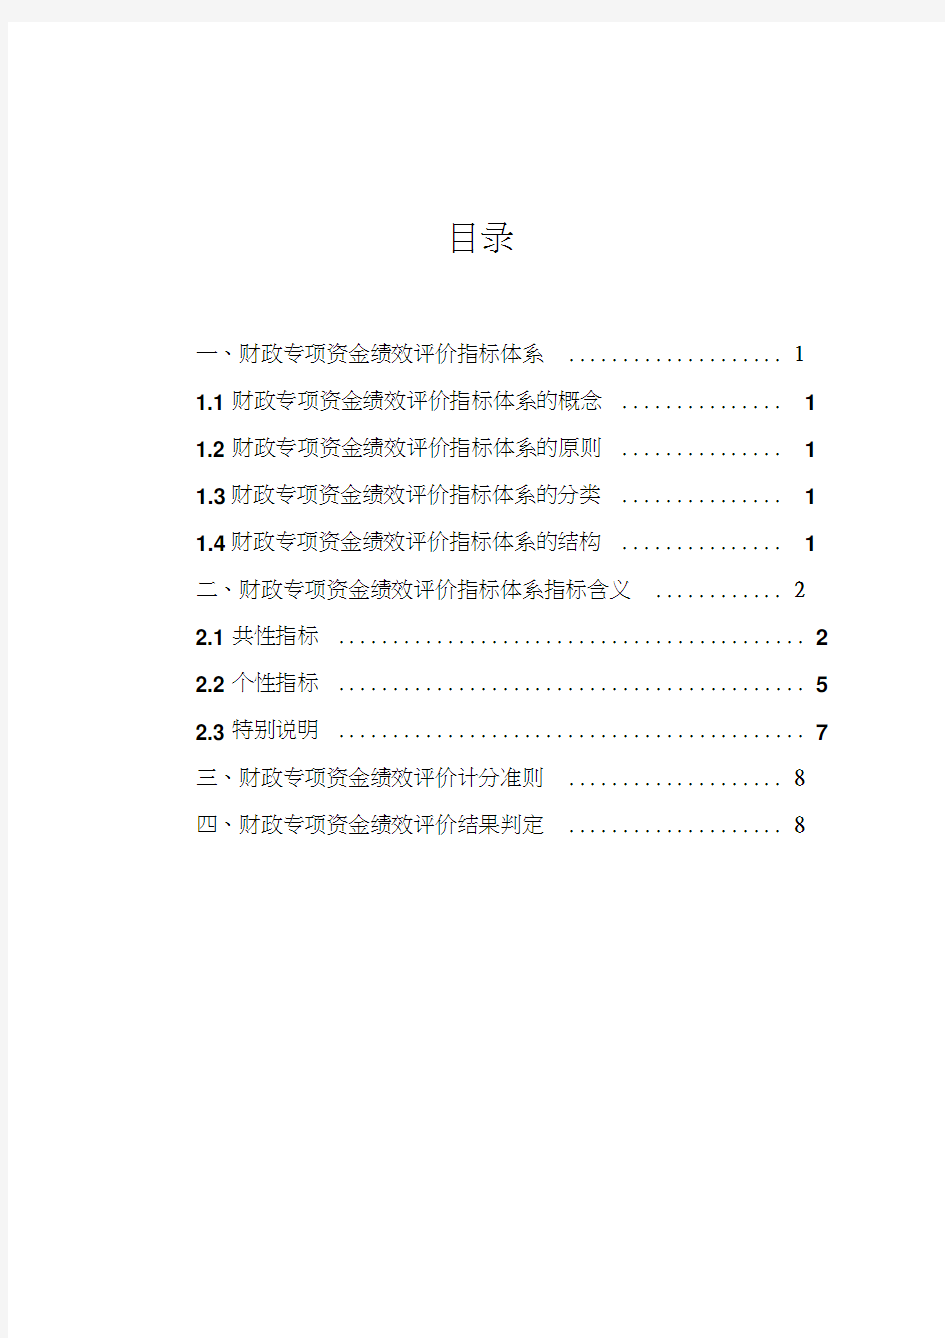 最新重庆市财政专项资金绩效评价指标体系资料